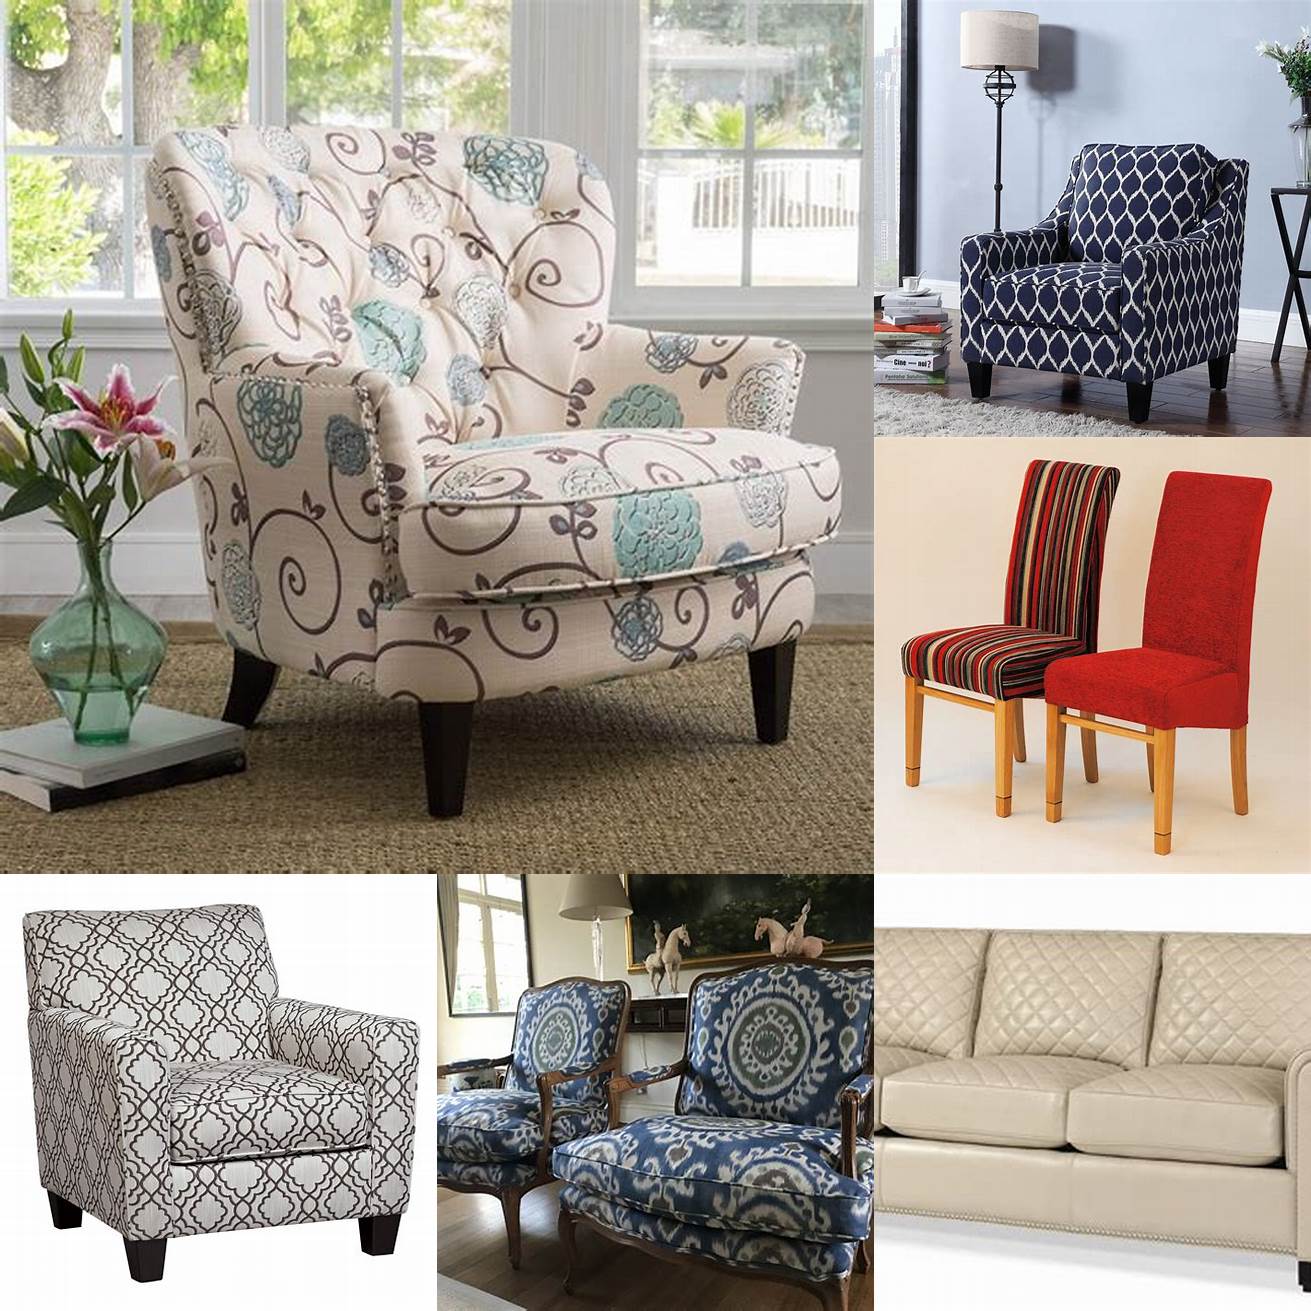 Upholstered Furniture